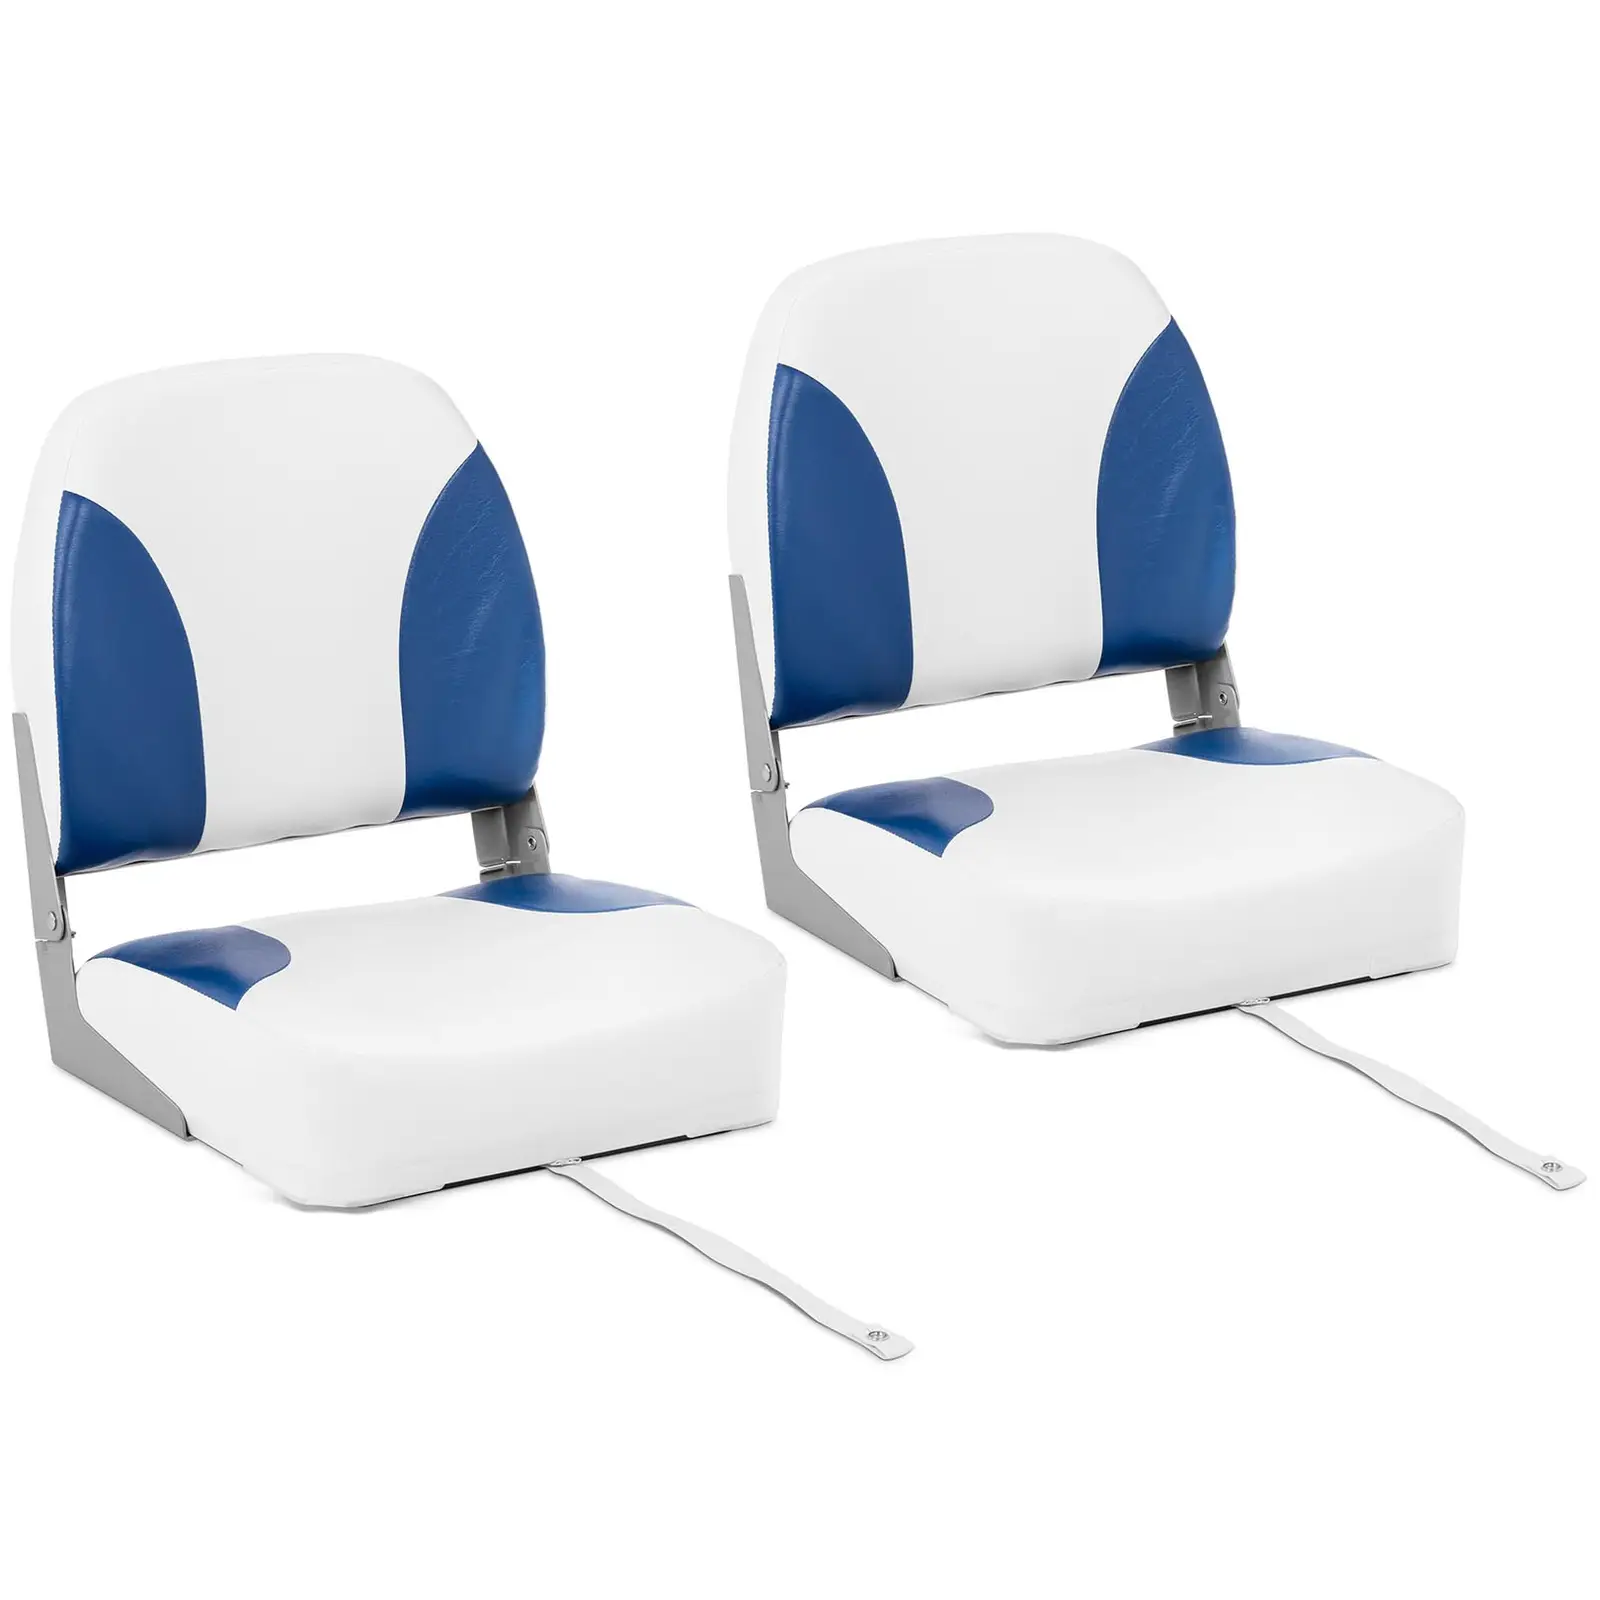 Boat Seat - 2 pcs. - 41 x 50 x 51 cm - white-blue